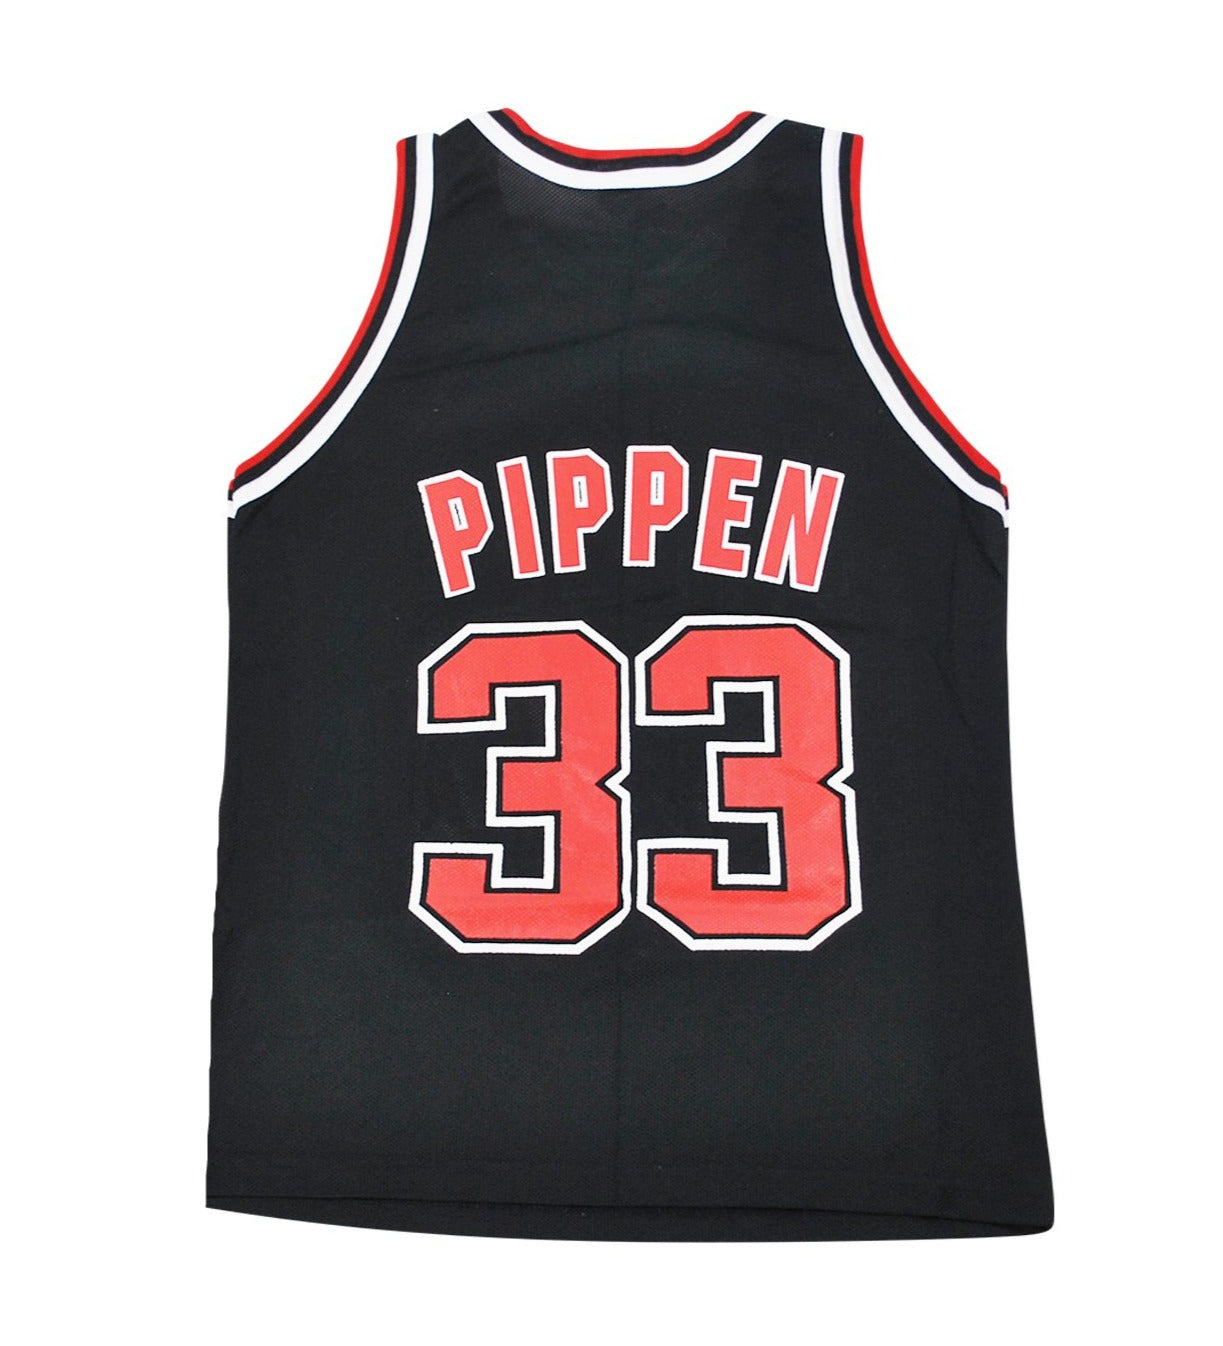  Scottie Pippen Jersey